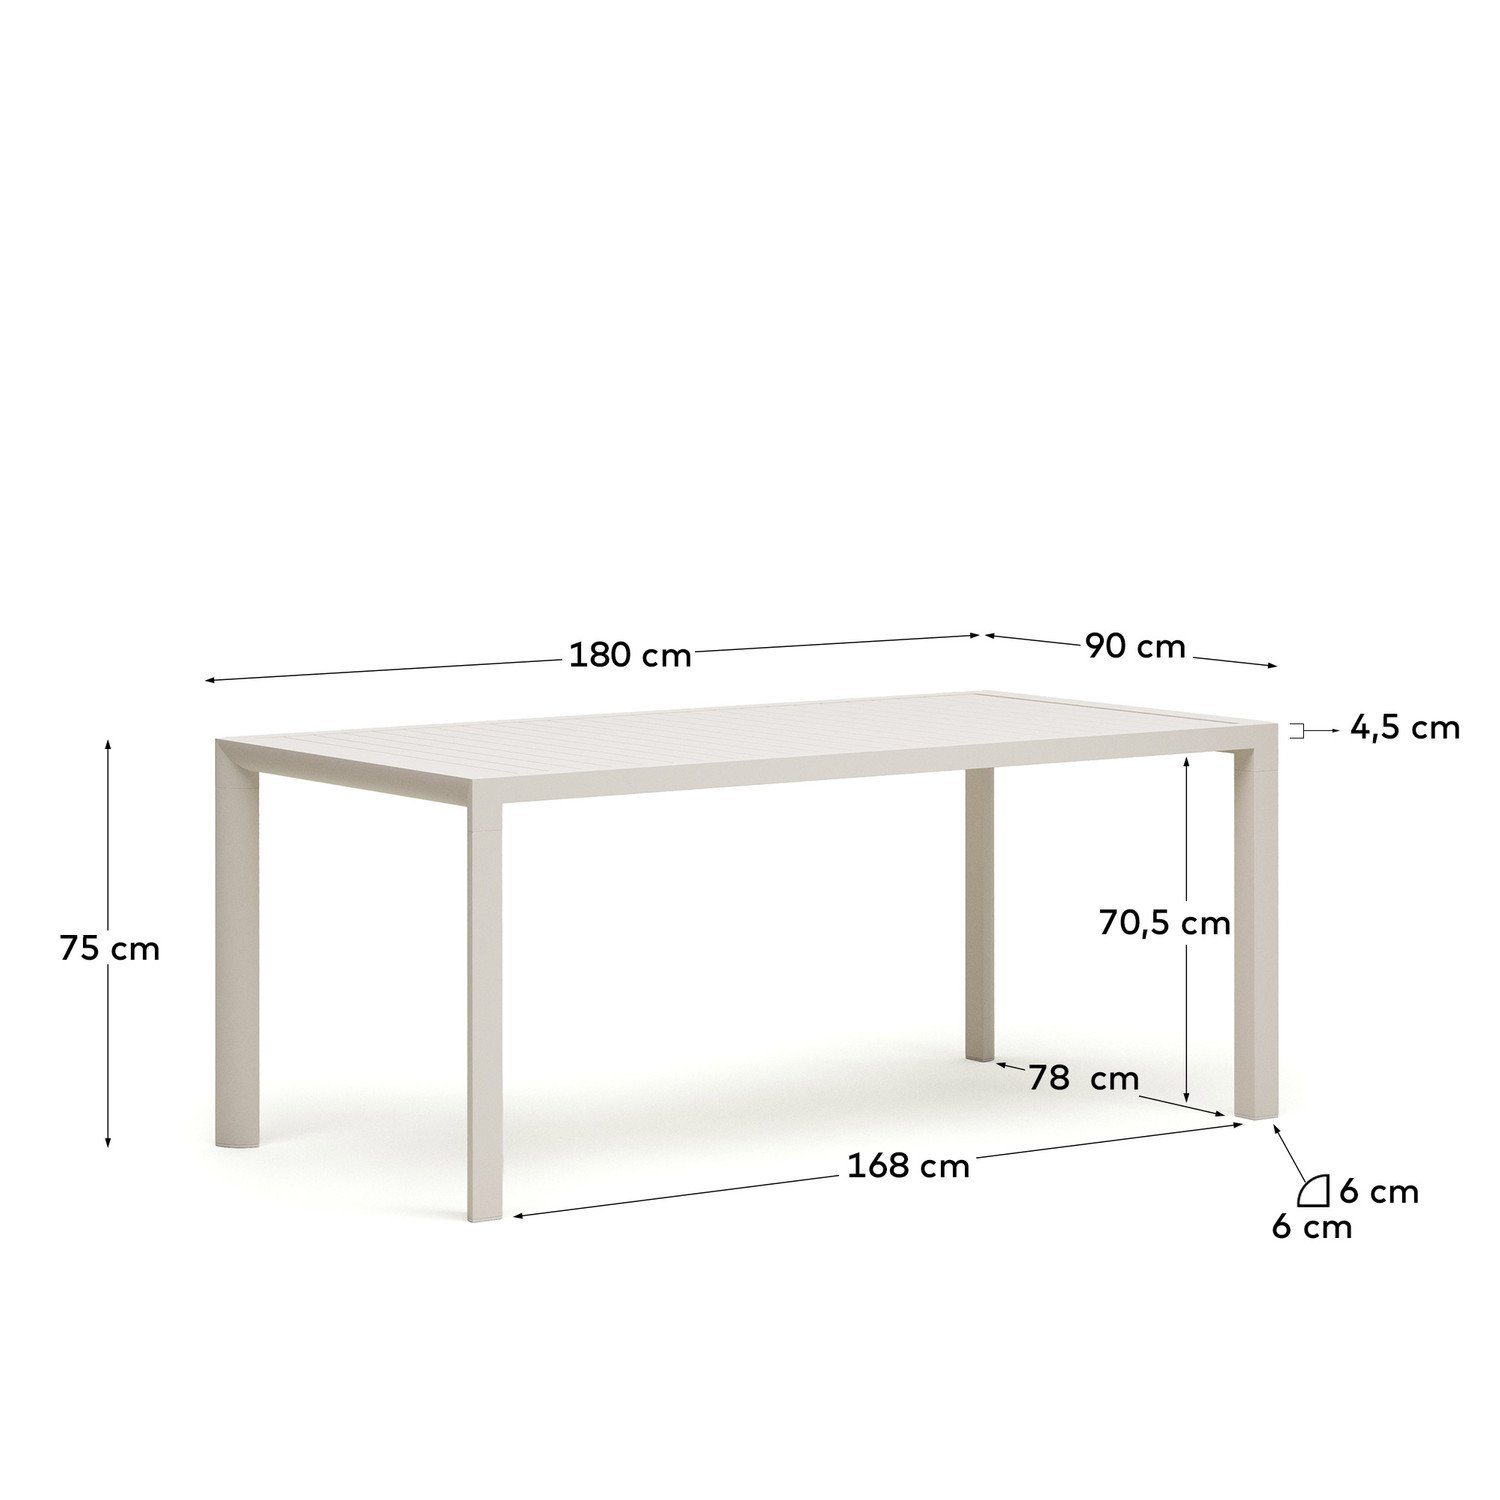 Aluminium Culip Esstisch Outdoor Natur24 90x180x75cm Esstisch Gartentisch Tisch weiß